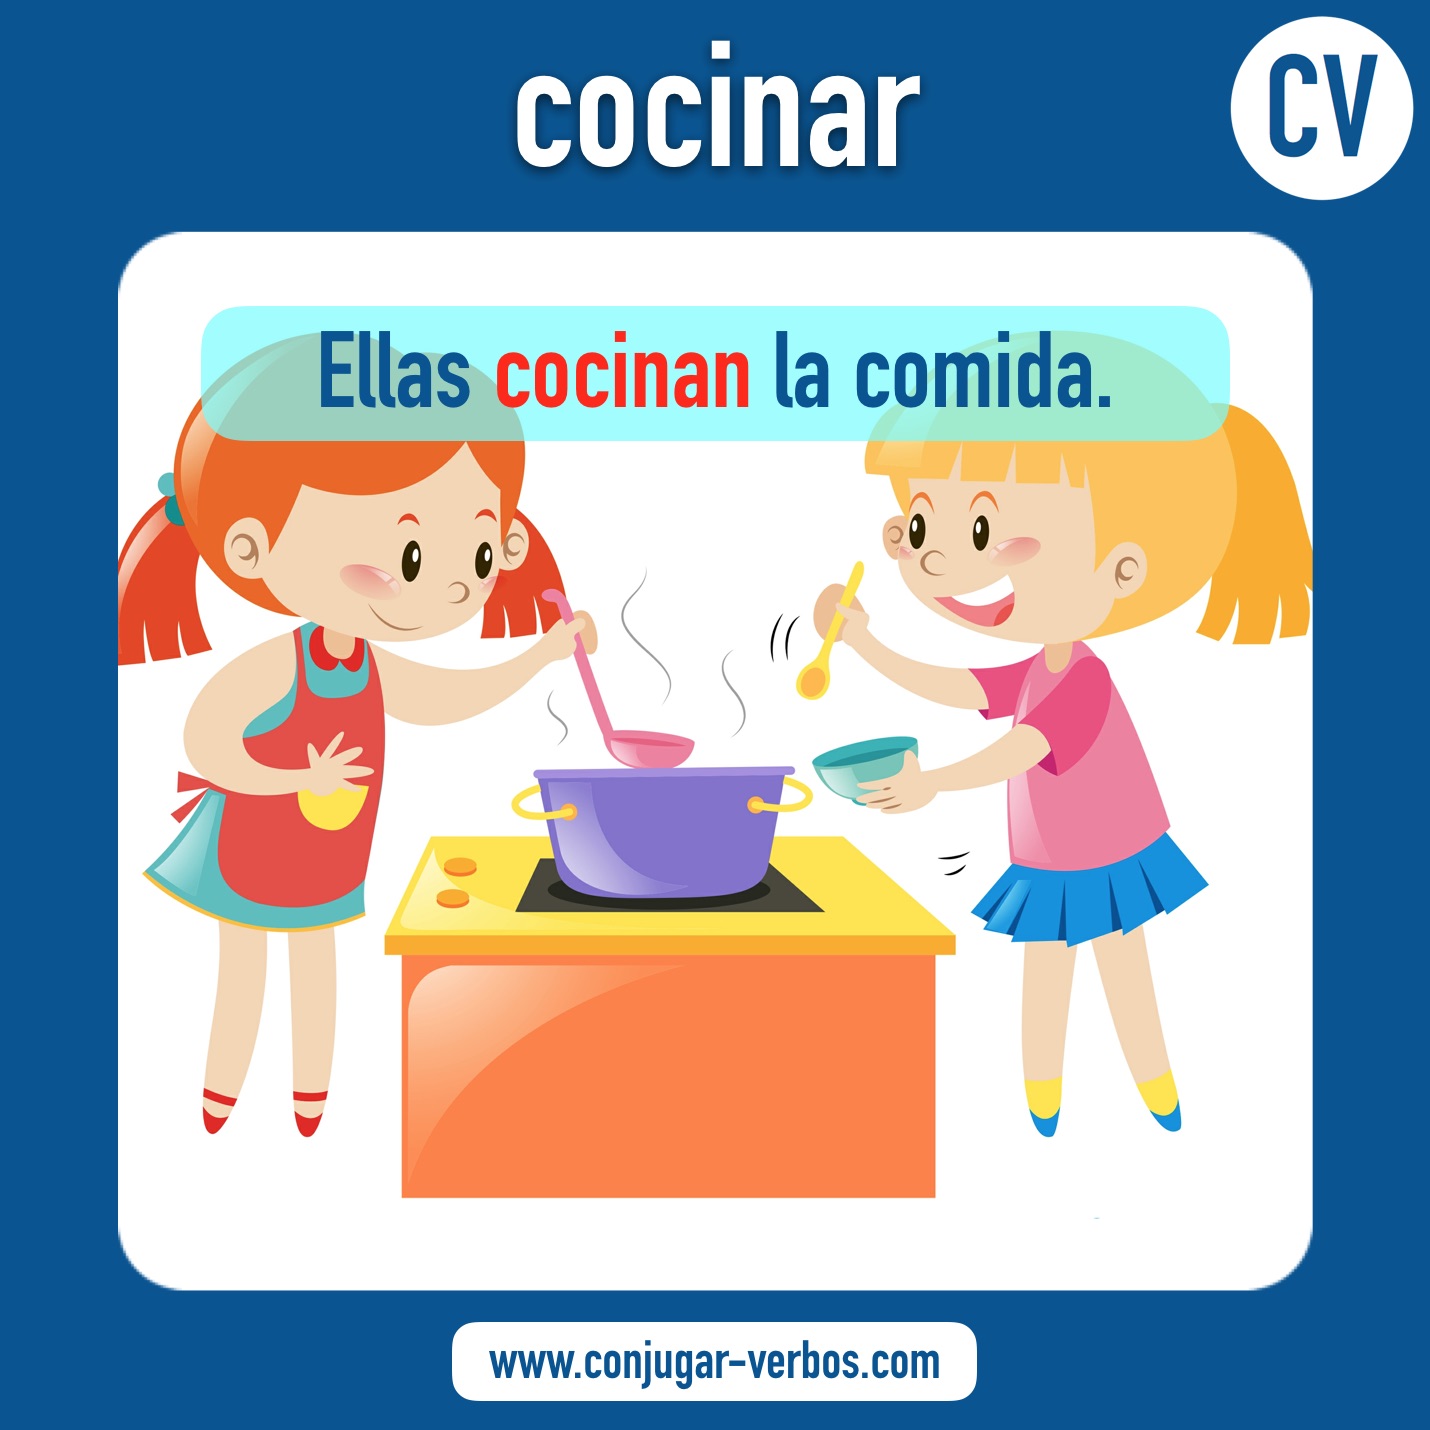 verbo cocinar | cocinar | imagen del verbo cocinar | conjugacion del verbo cocinar